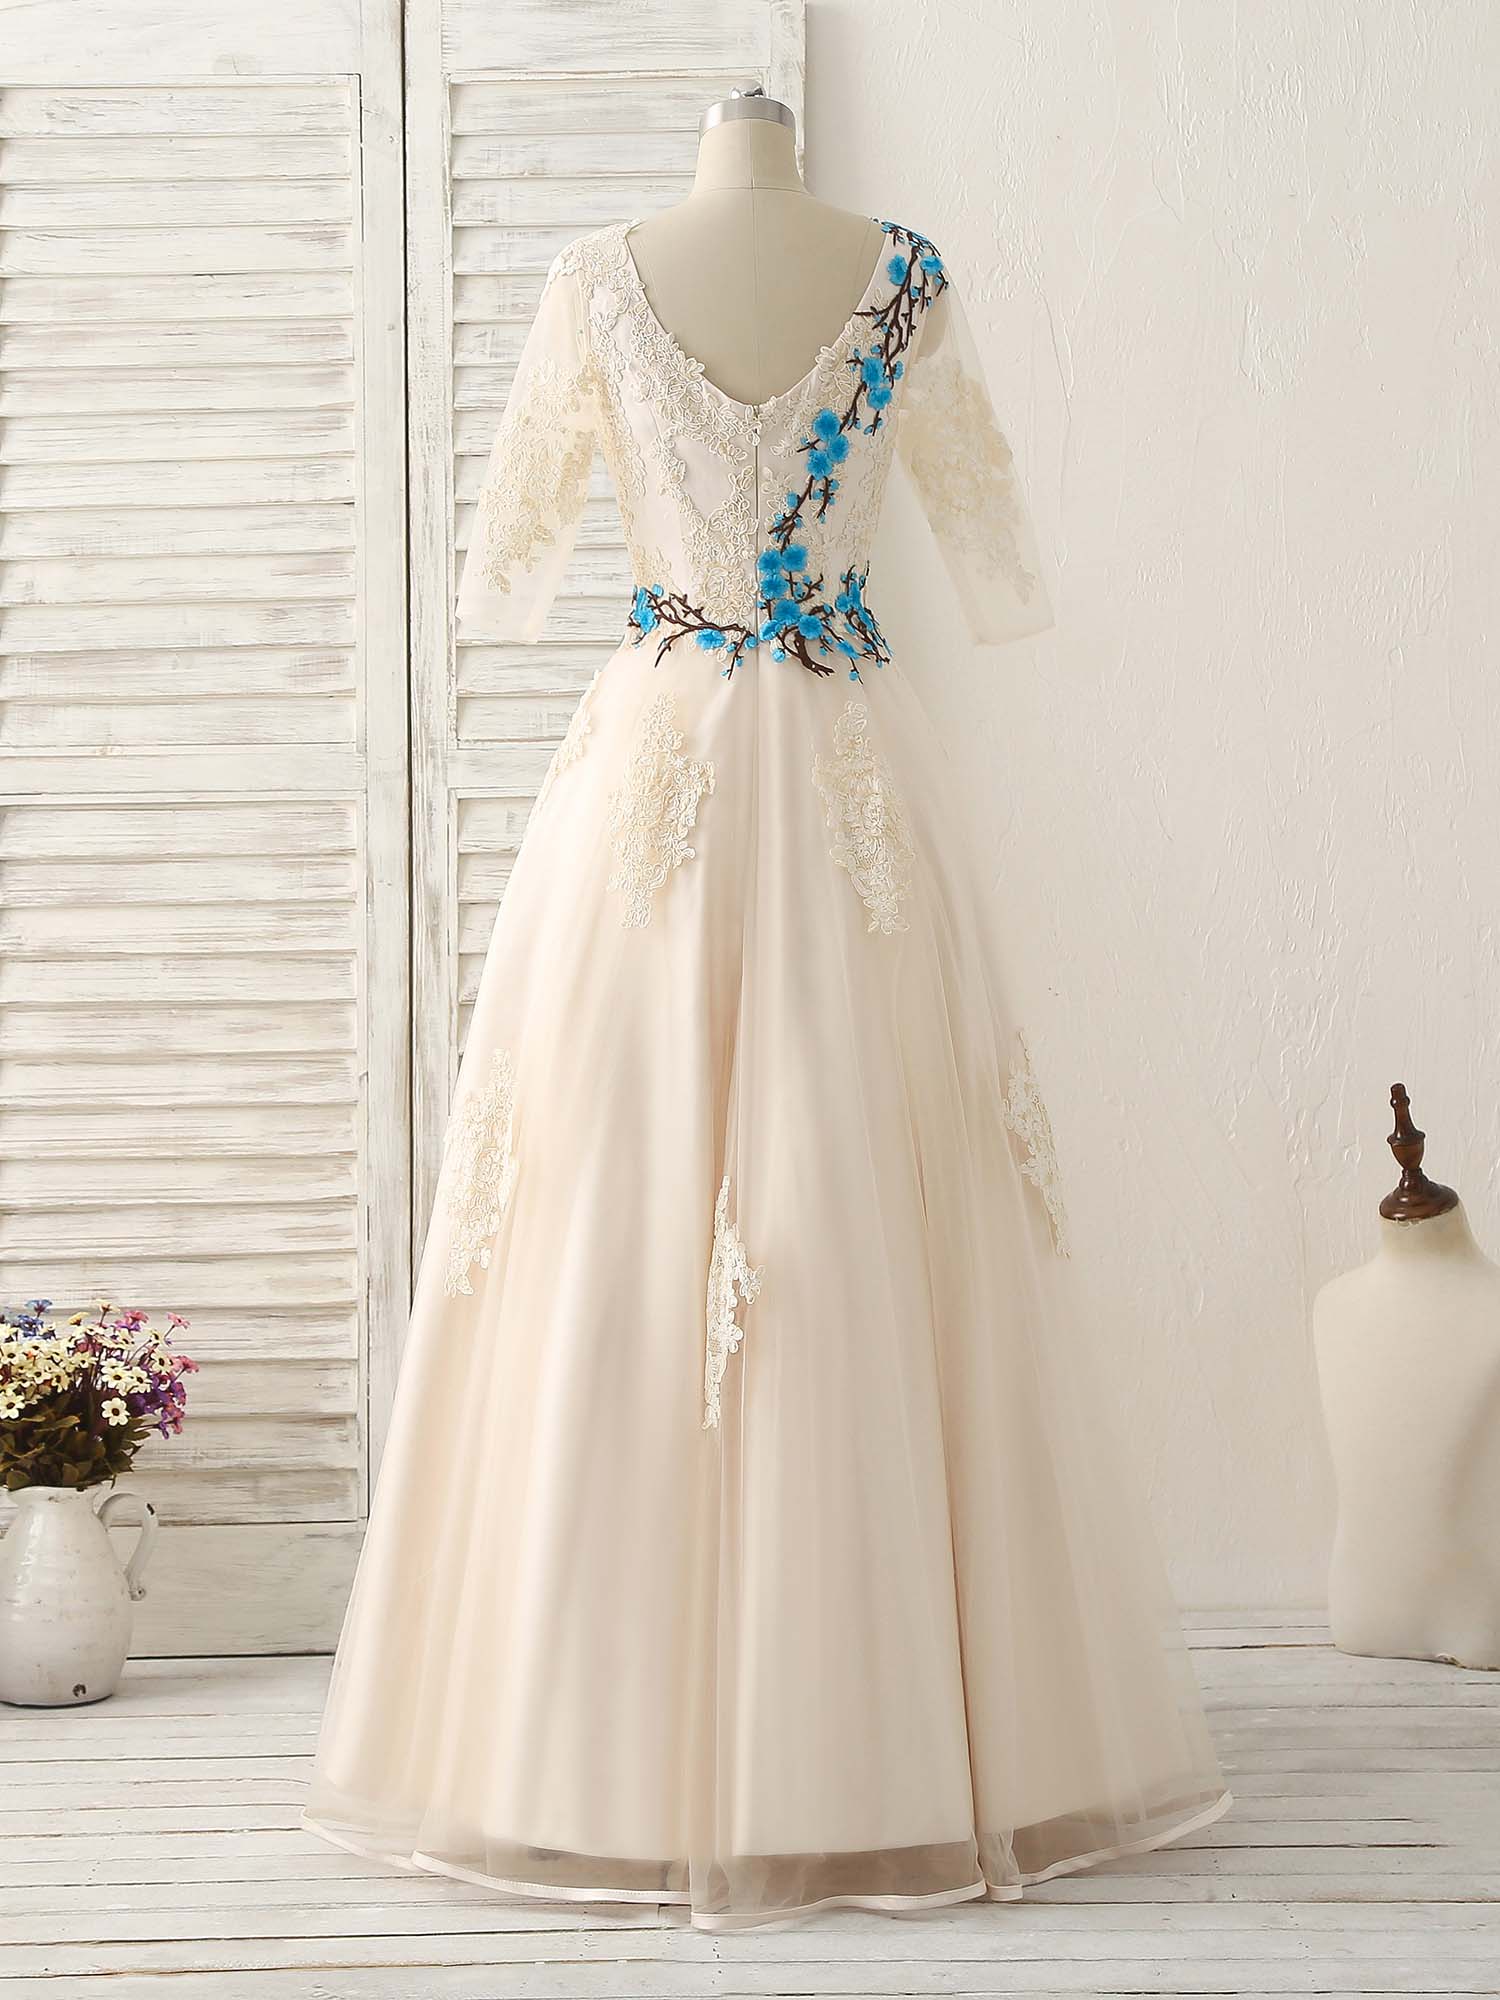 Sundress, Unique Lace Applique Tulle Long Prom Dress Light Champagne Bridesmaid Dress